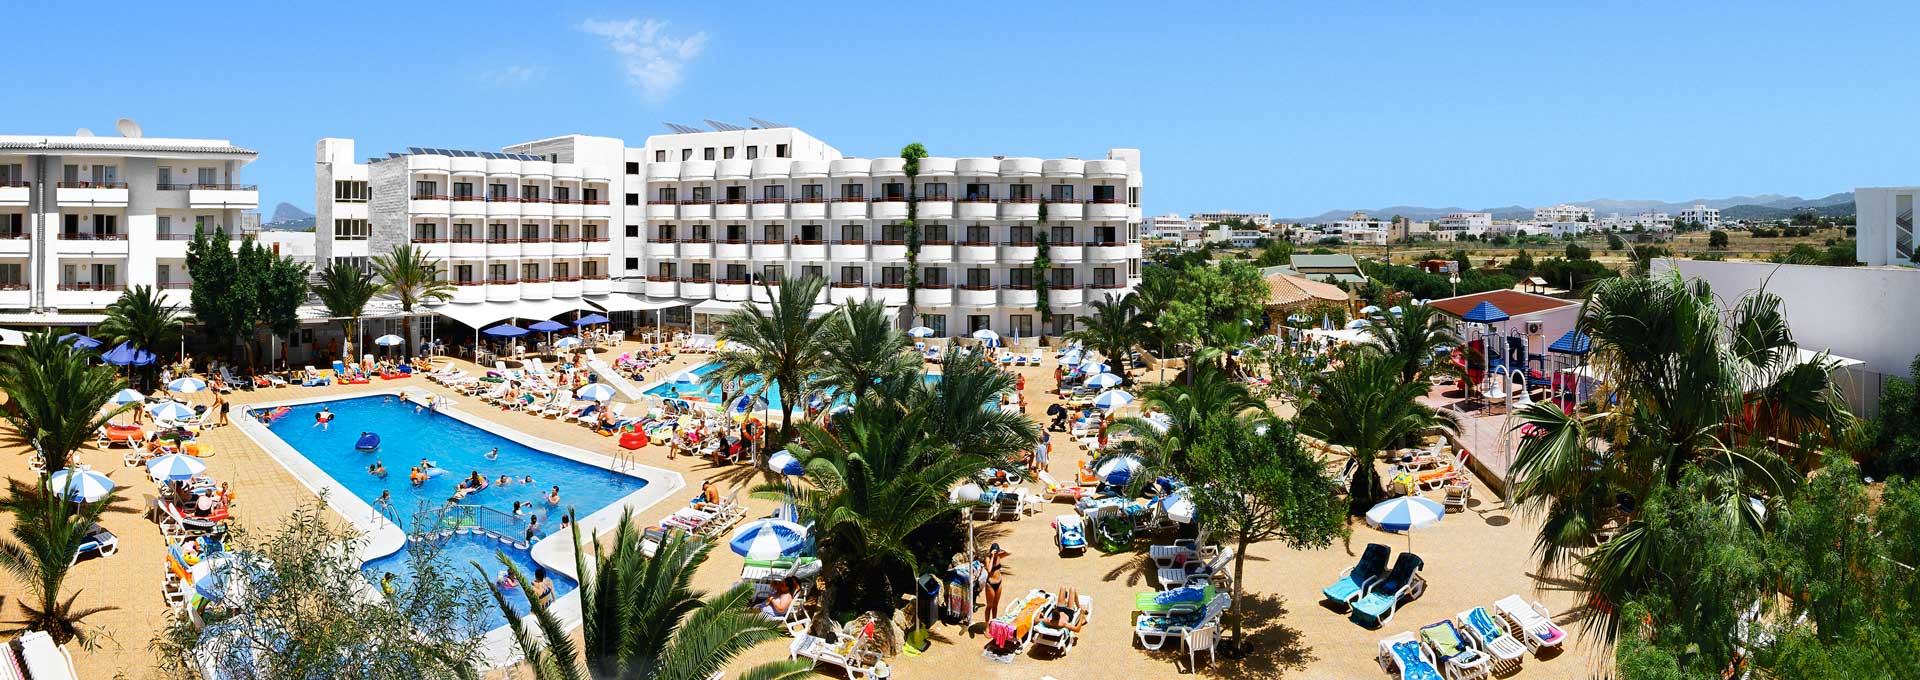 Resort Hotel and Apartments, Coral Star Ibiza - Star Resorts Group